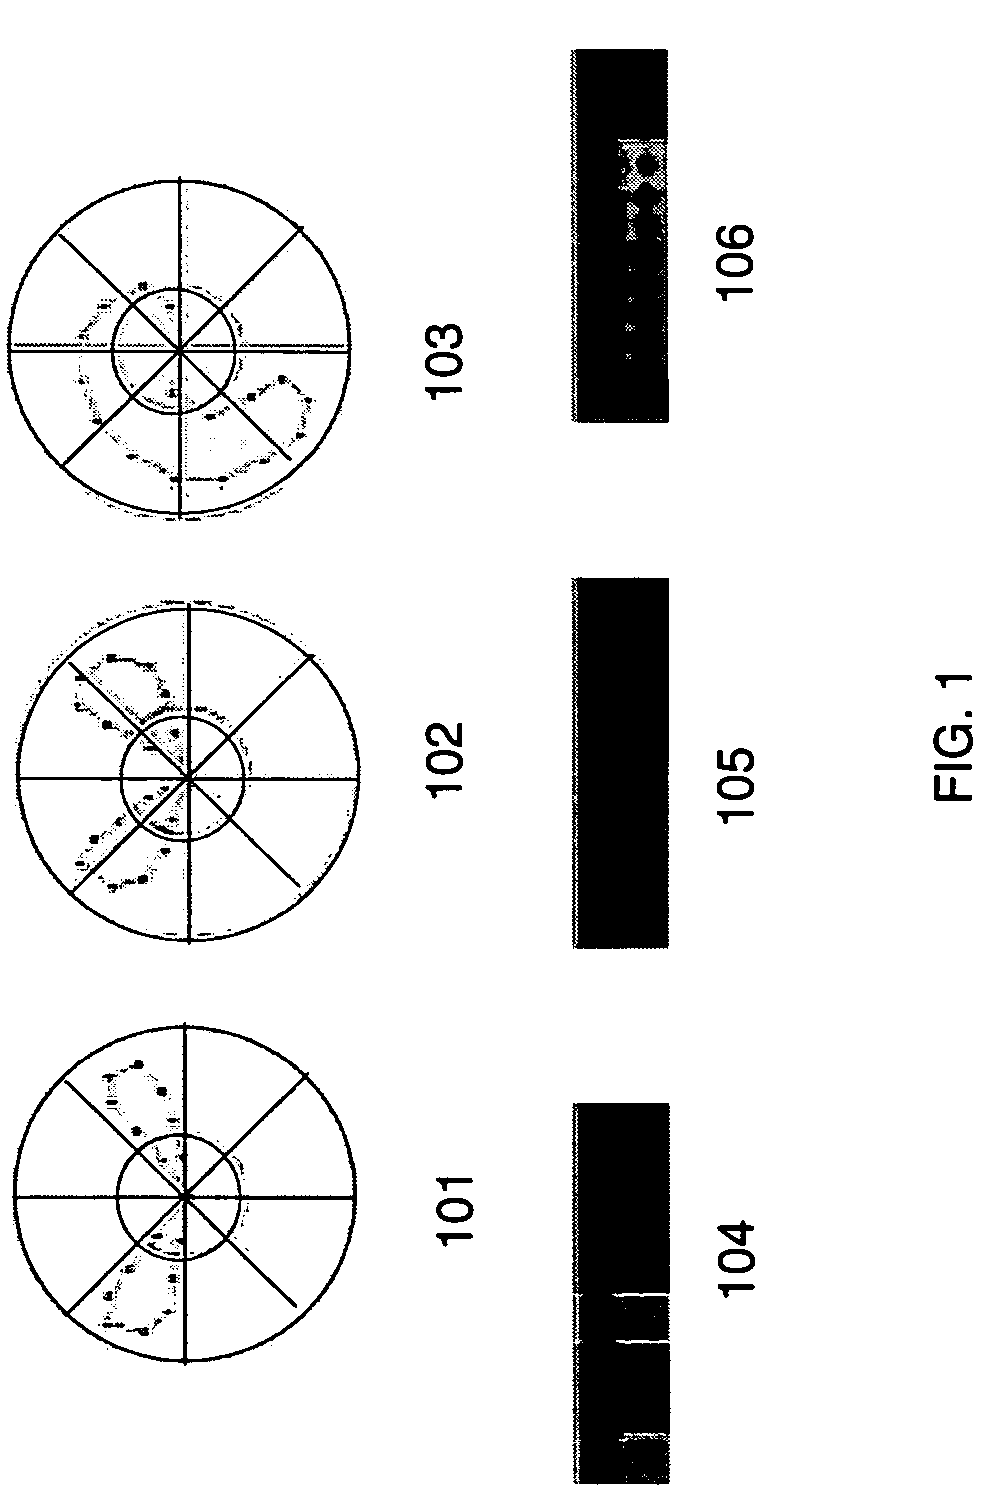 Diffusion distance for histogram comparison